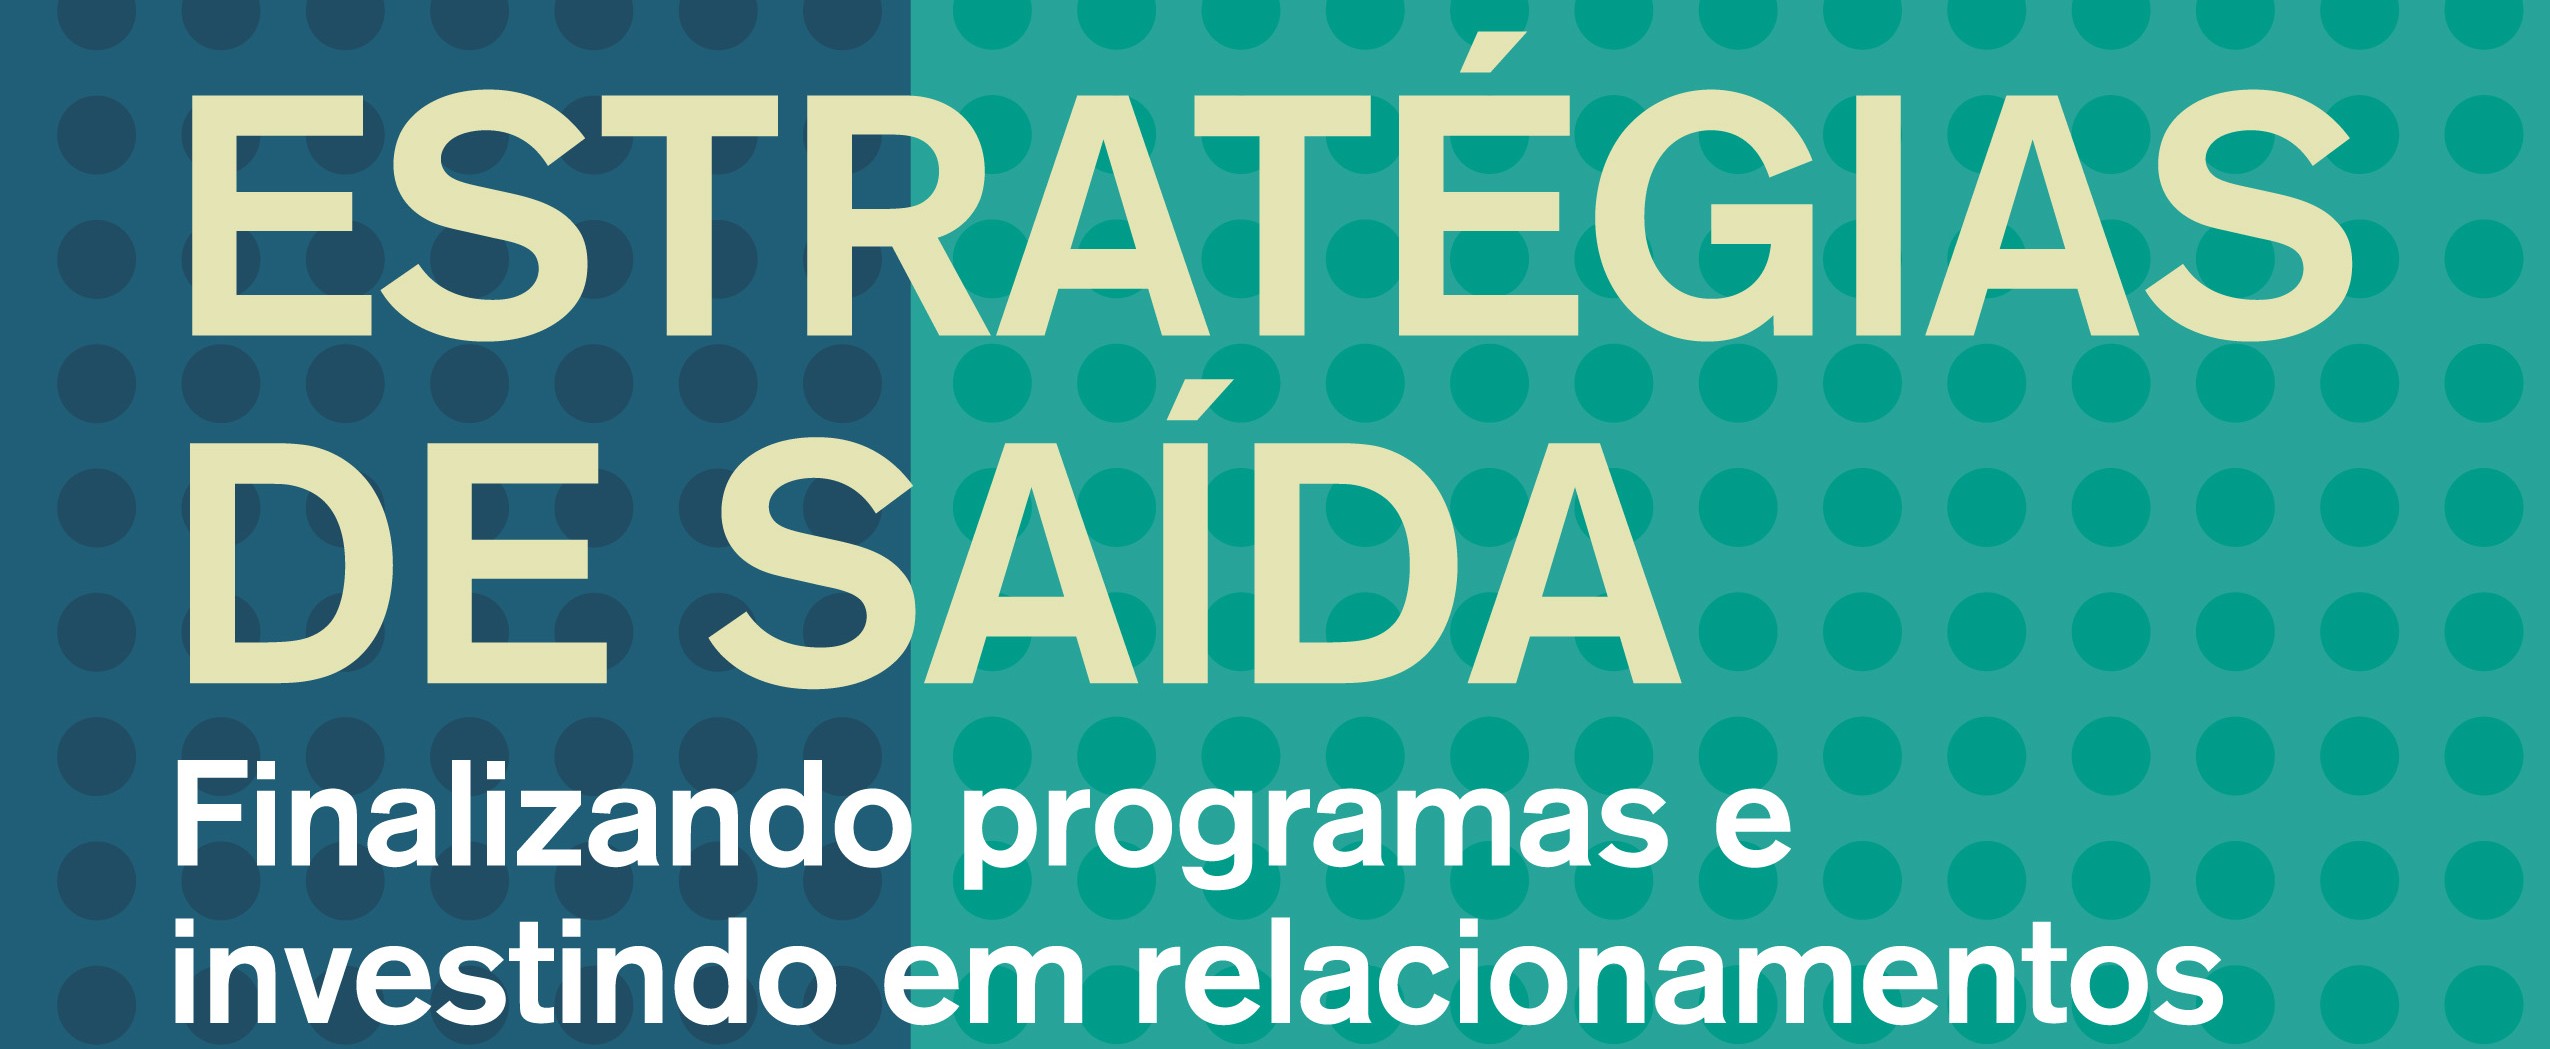 Estratégias de Saída: Finalizando programas e investindo em relacionamentos